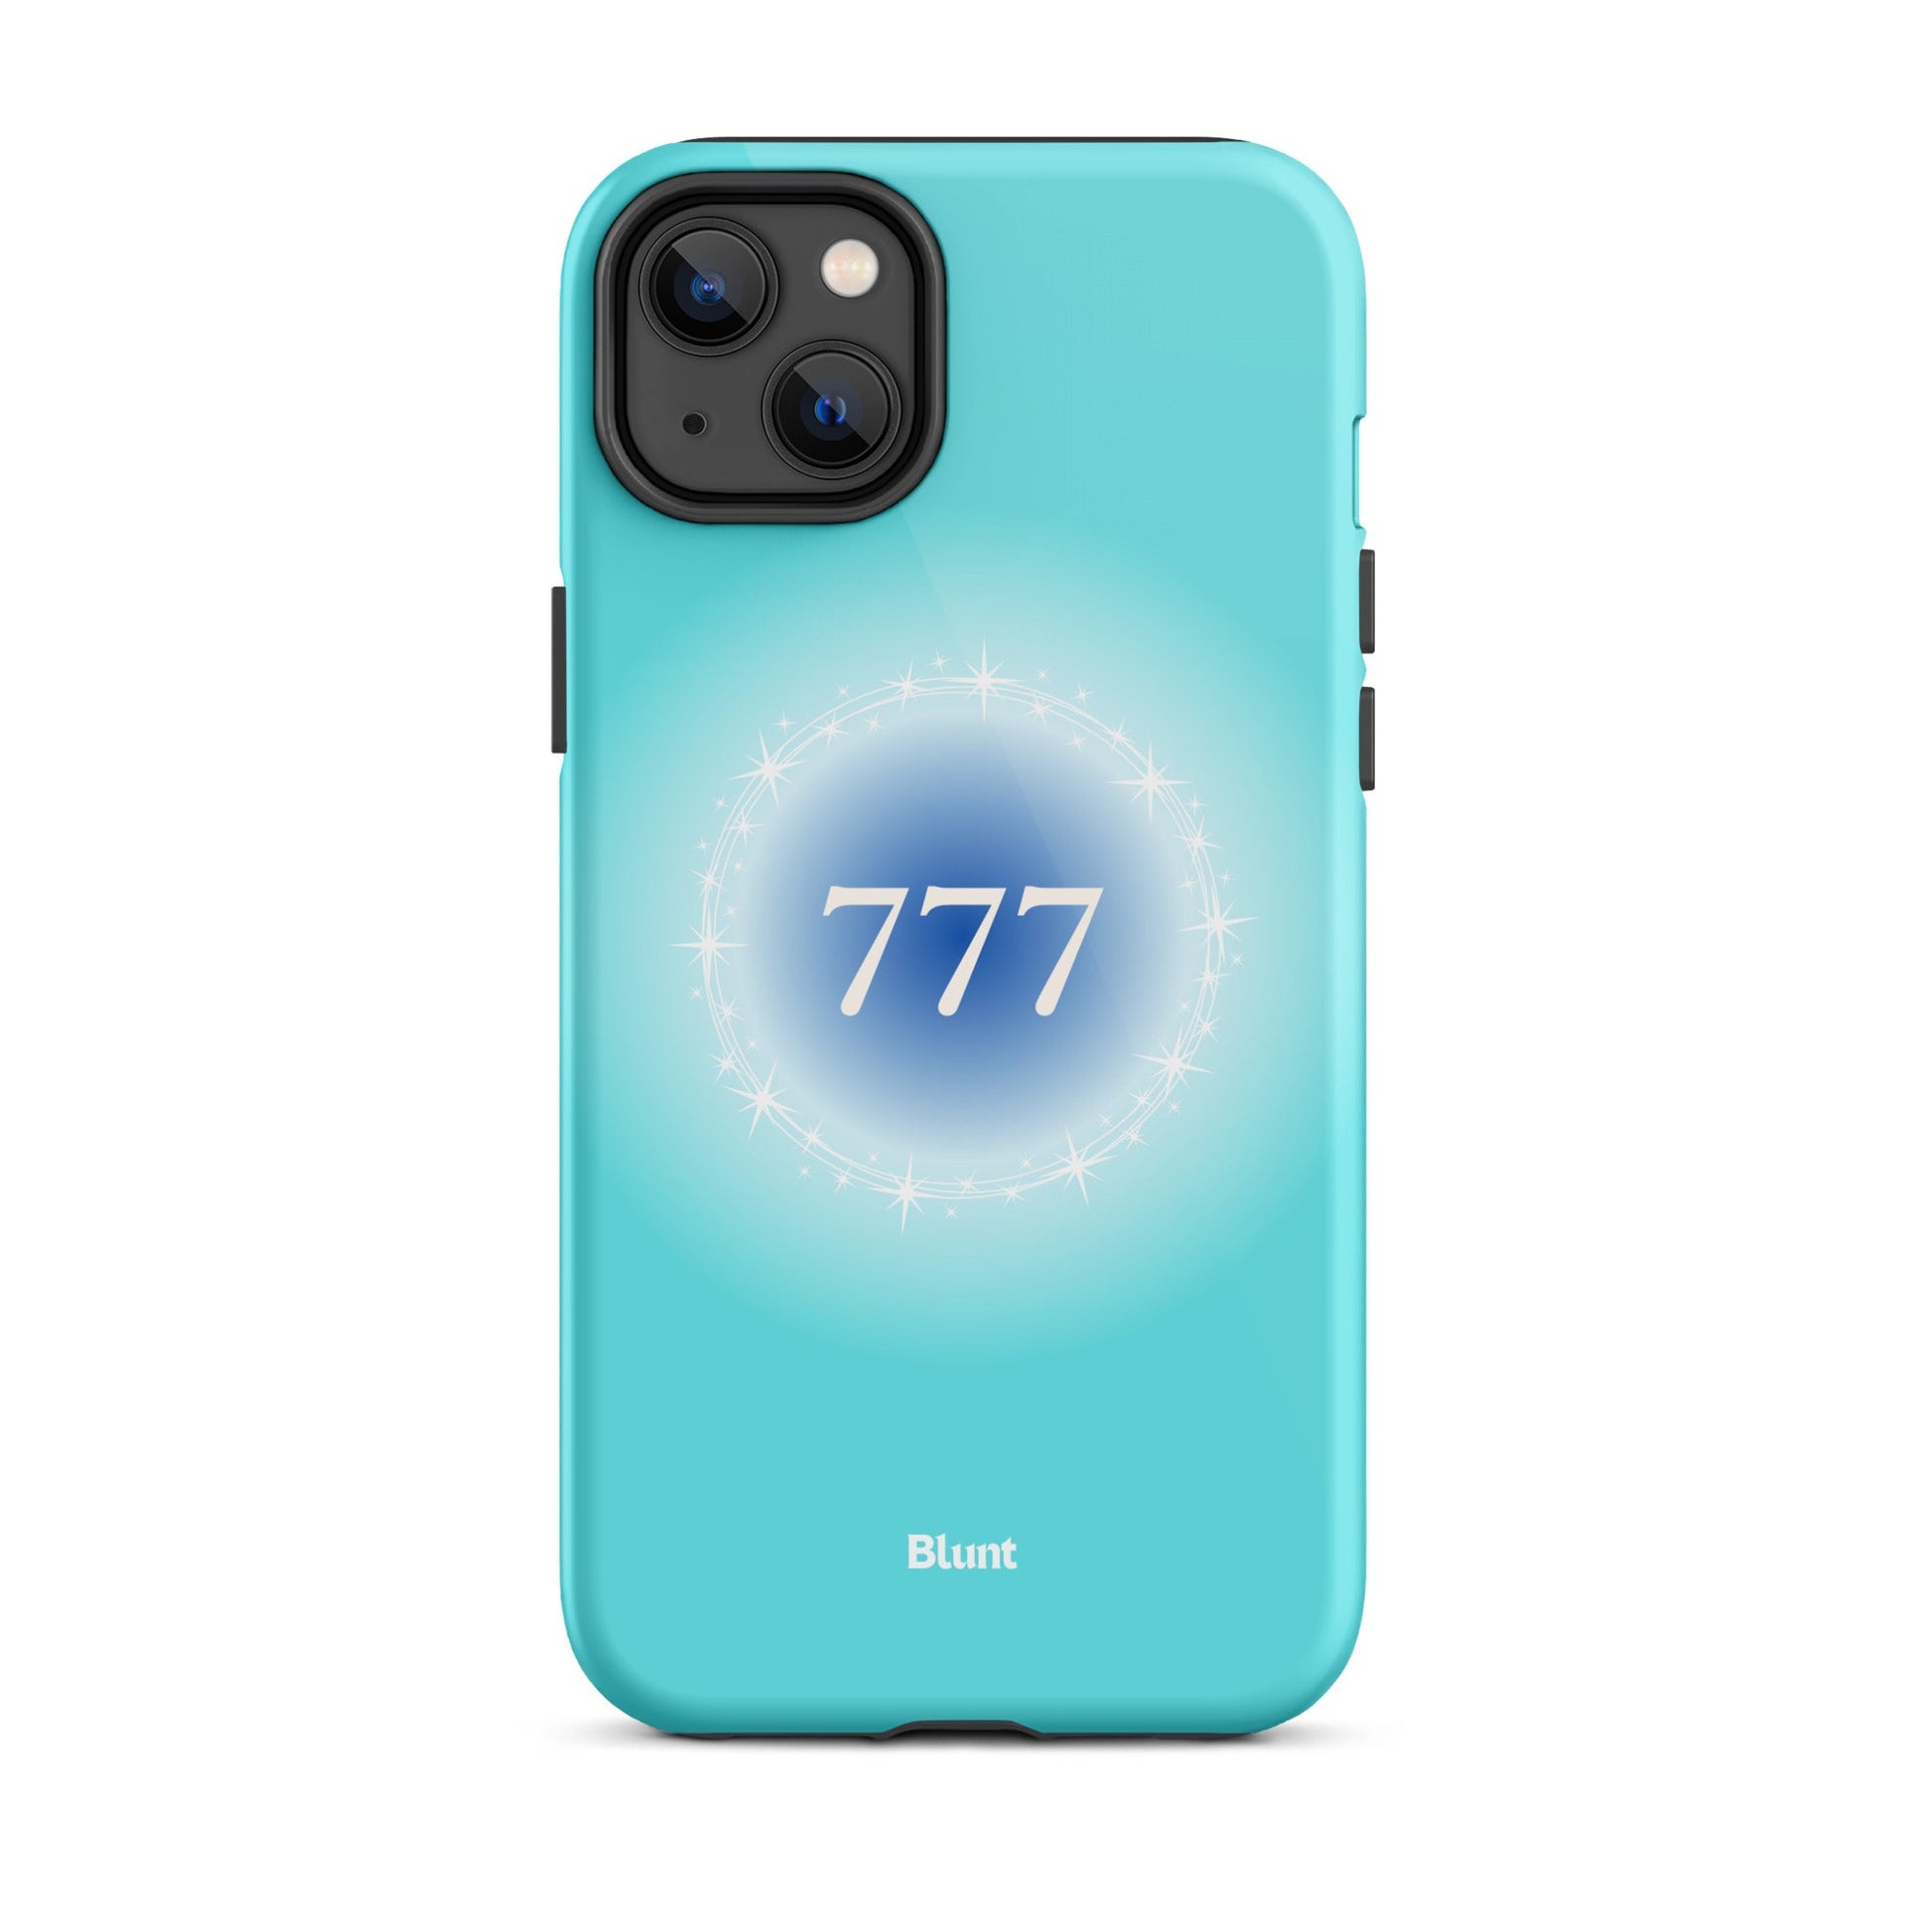 777 iPhone Case - blunt cases